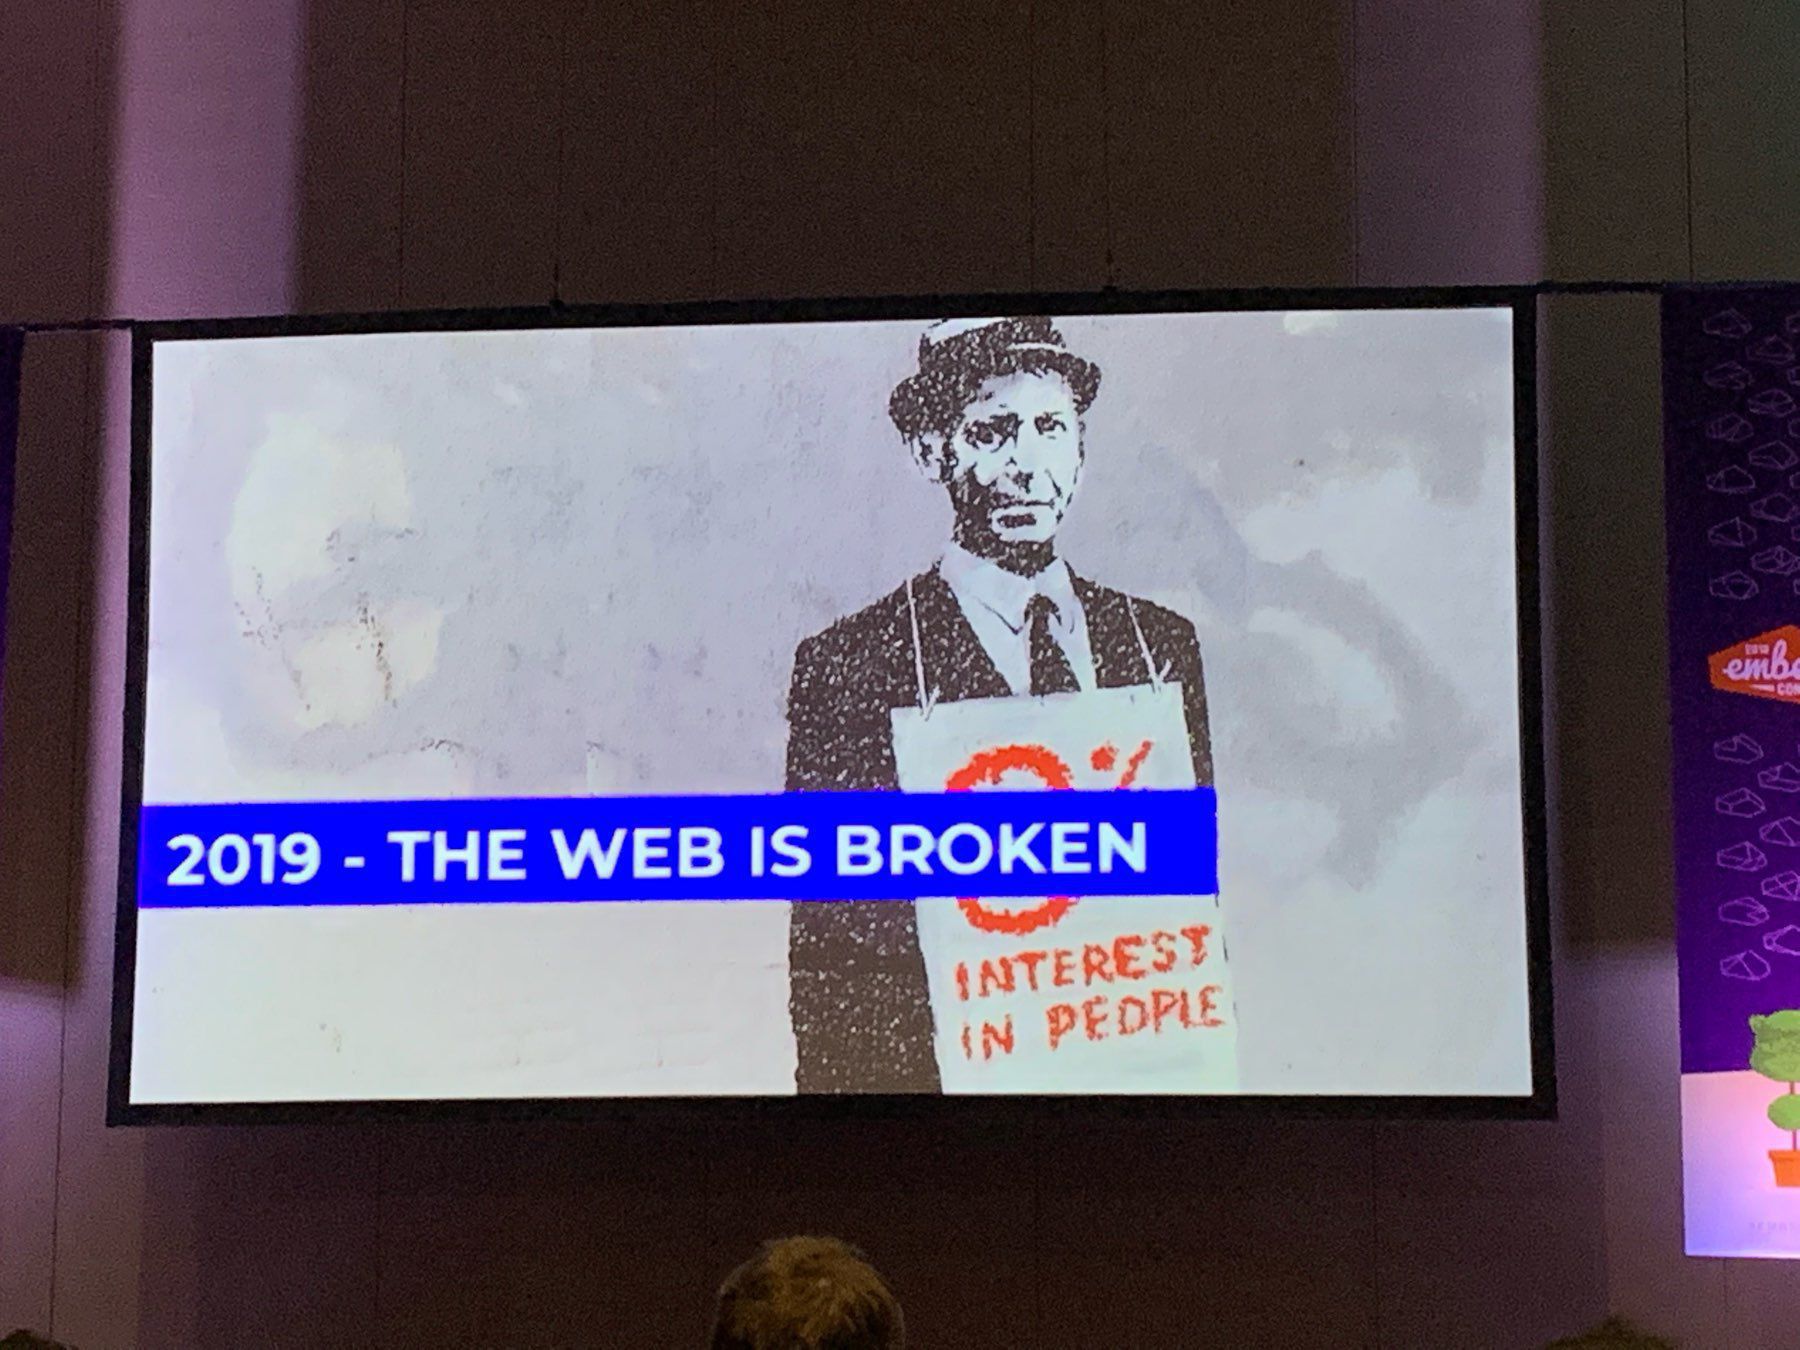 EmberConf keynote talk